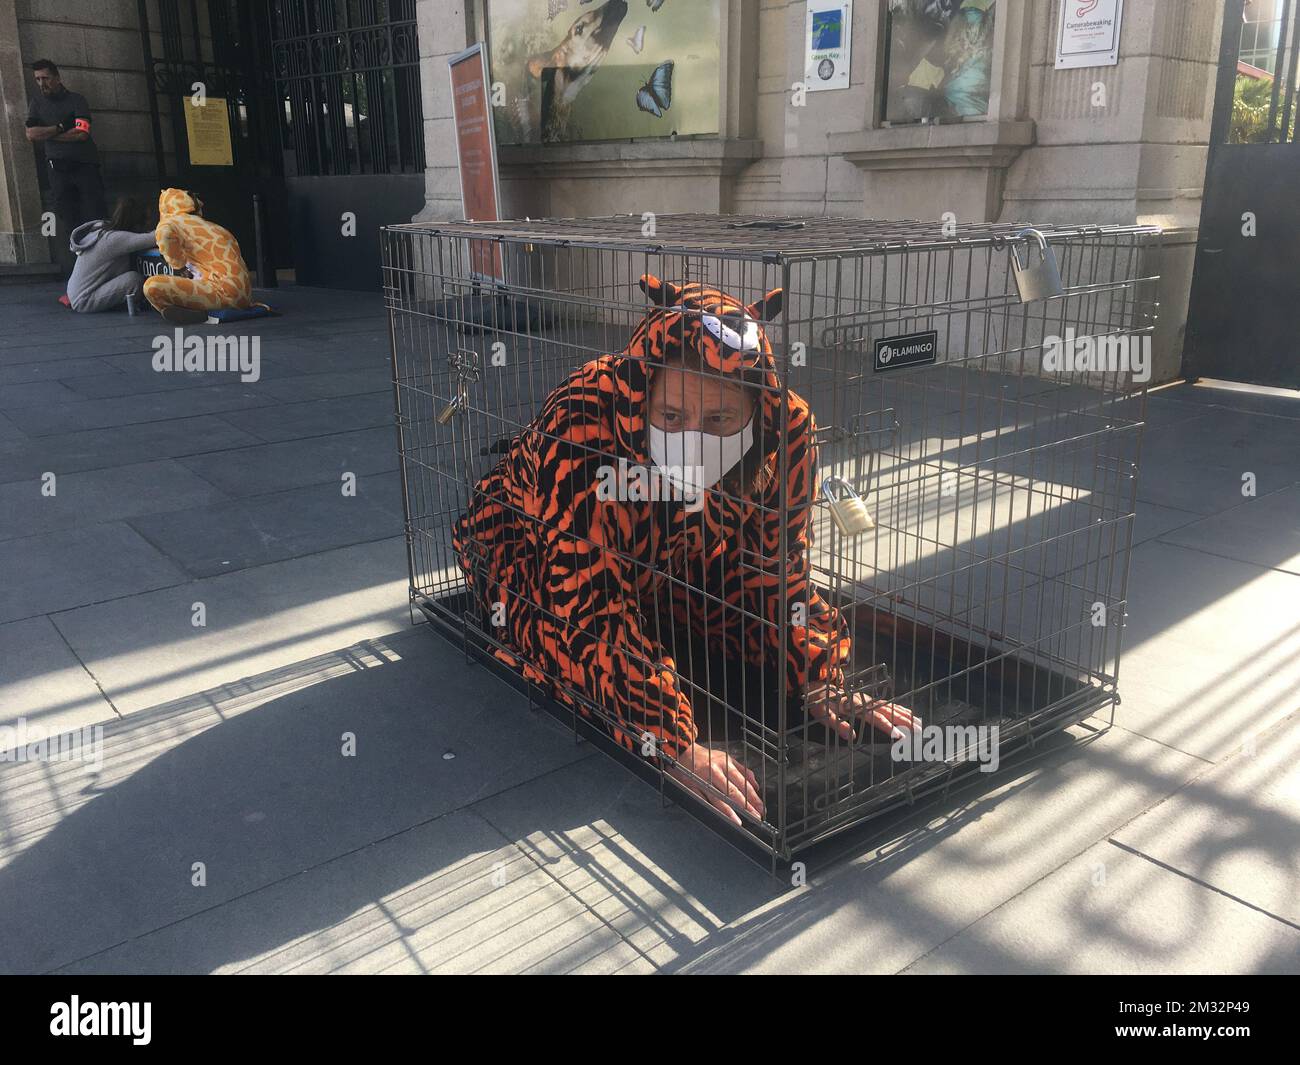 Bild zum Belga-Artikel "Dierenrechtenactivisten van Animal Resistance voeren actie aan Zoo van Antwerpen", heute in ANTWERPEN verteilt. BESTE VERFÜGBARE QUALITÄT - BELGA FOTO TAMARA VAN HASSELT Stockfoto